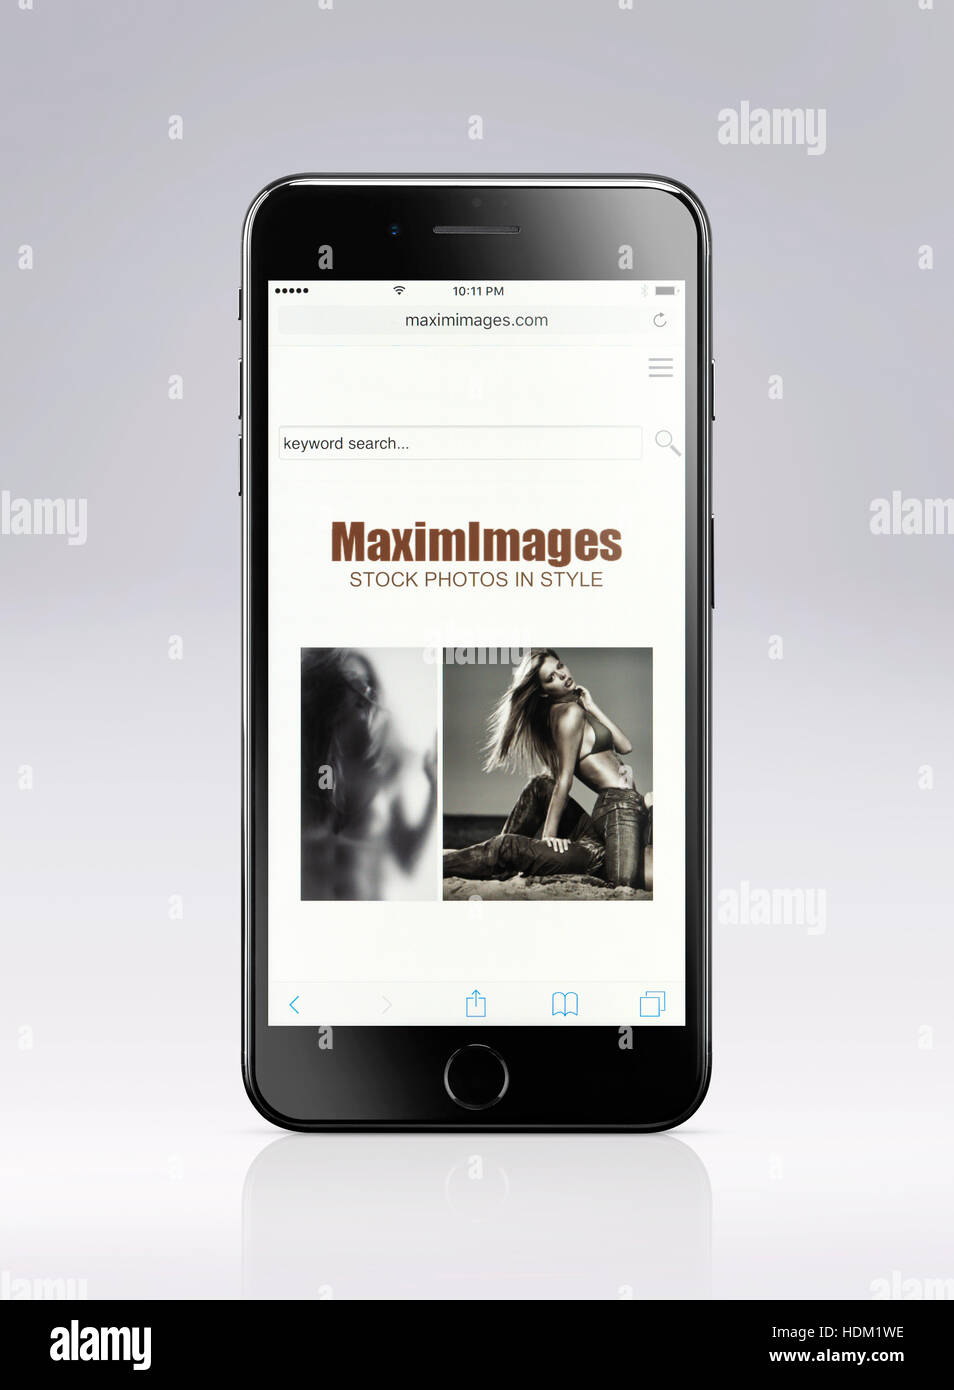 Apple iPhone 7 Plus con MaximImages fotografia stock sito web aperto sul suo display isolato su sfondo grigio chiaro con tracciato di ritaglio Foto Stock